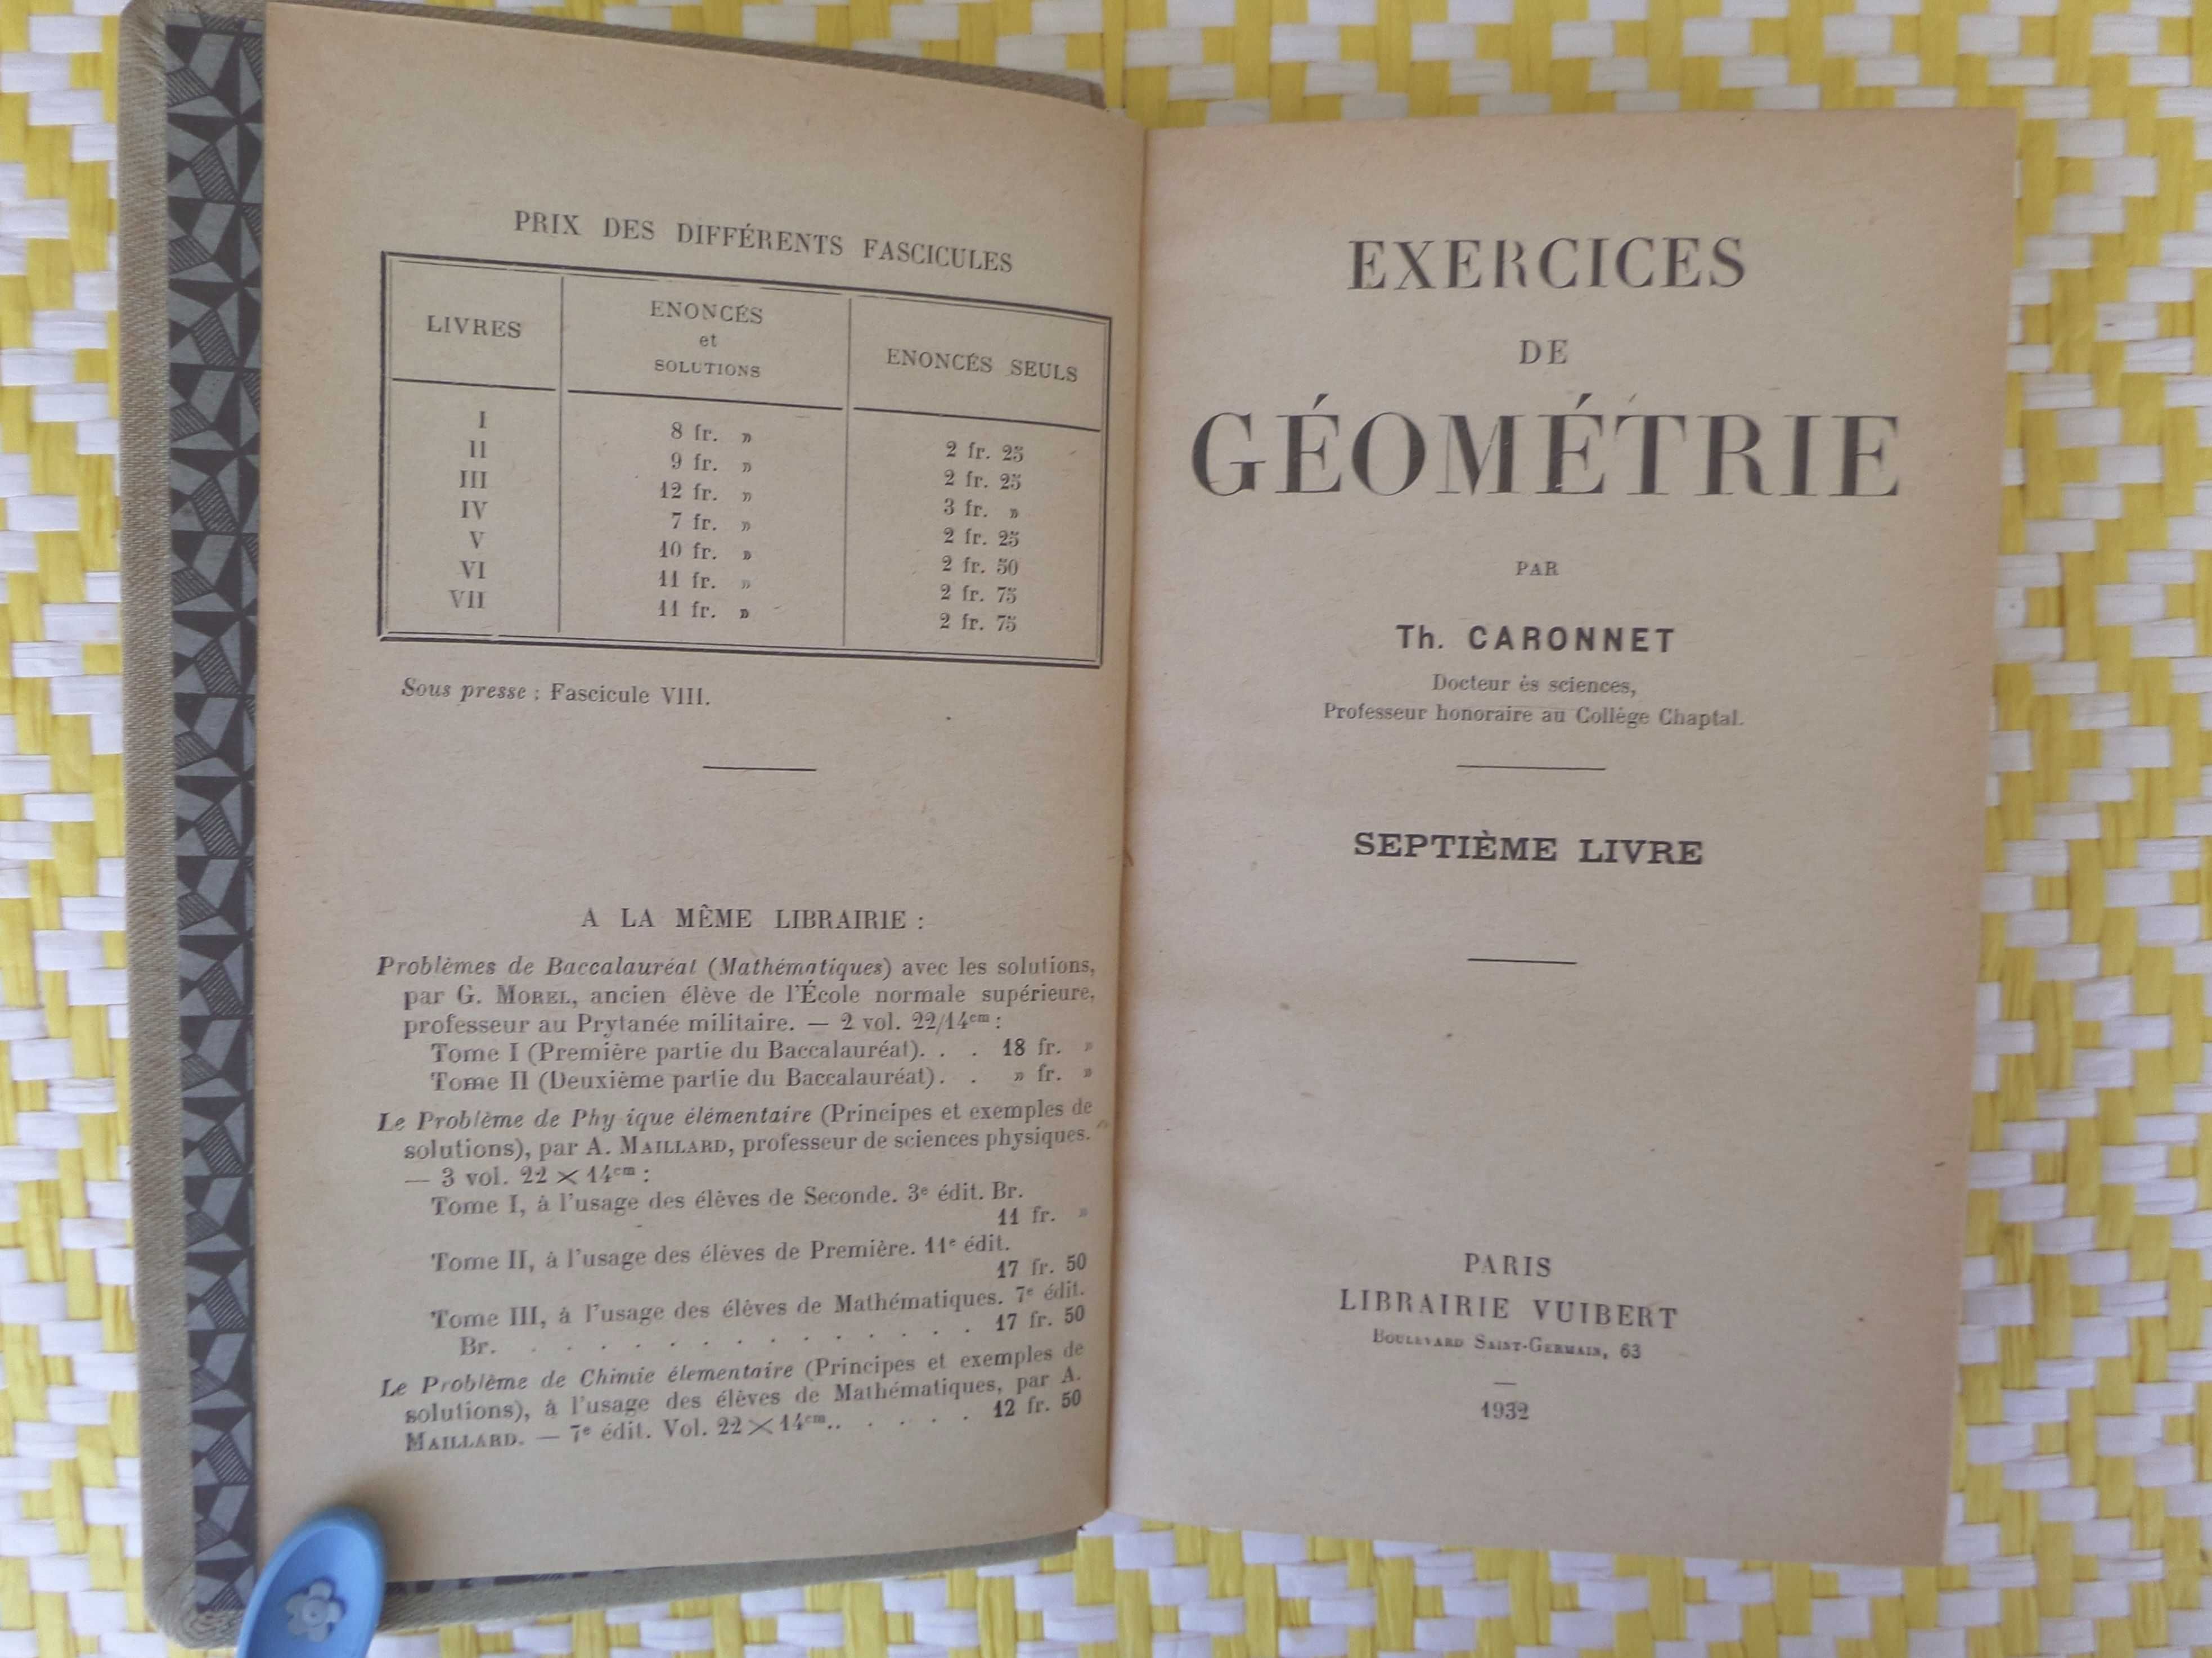 EXERCIDES DE GEOMÉTRIE
(Septiéme Livre)
Par Th. Caronnet